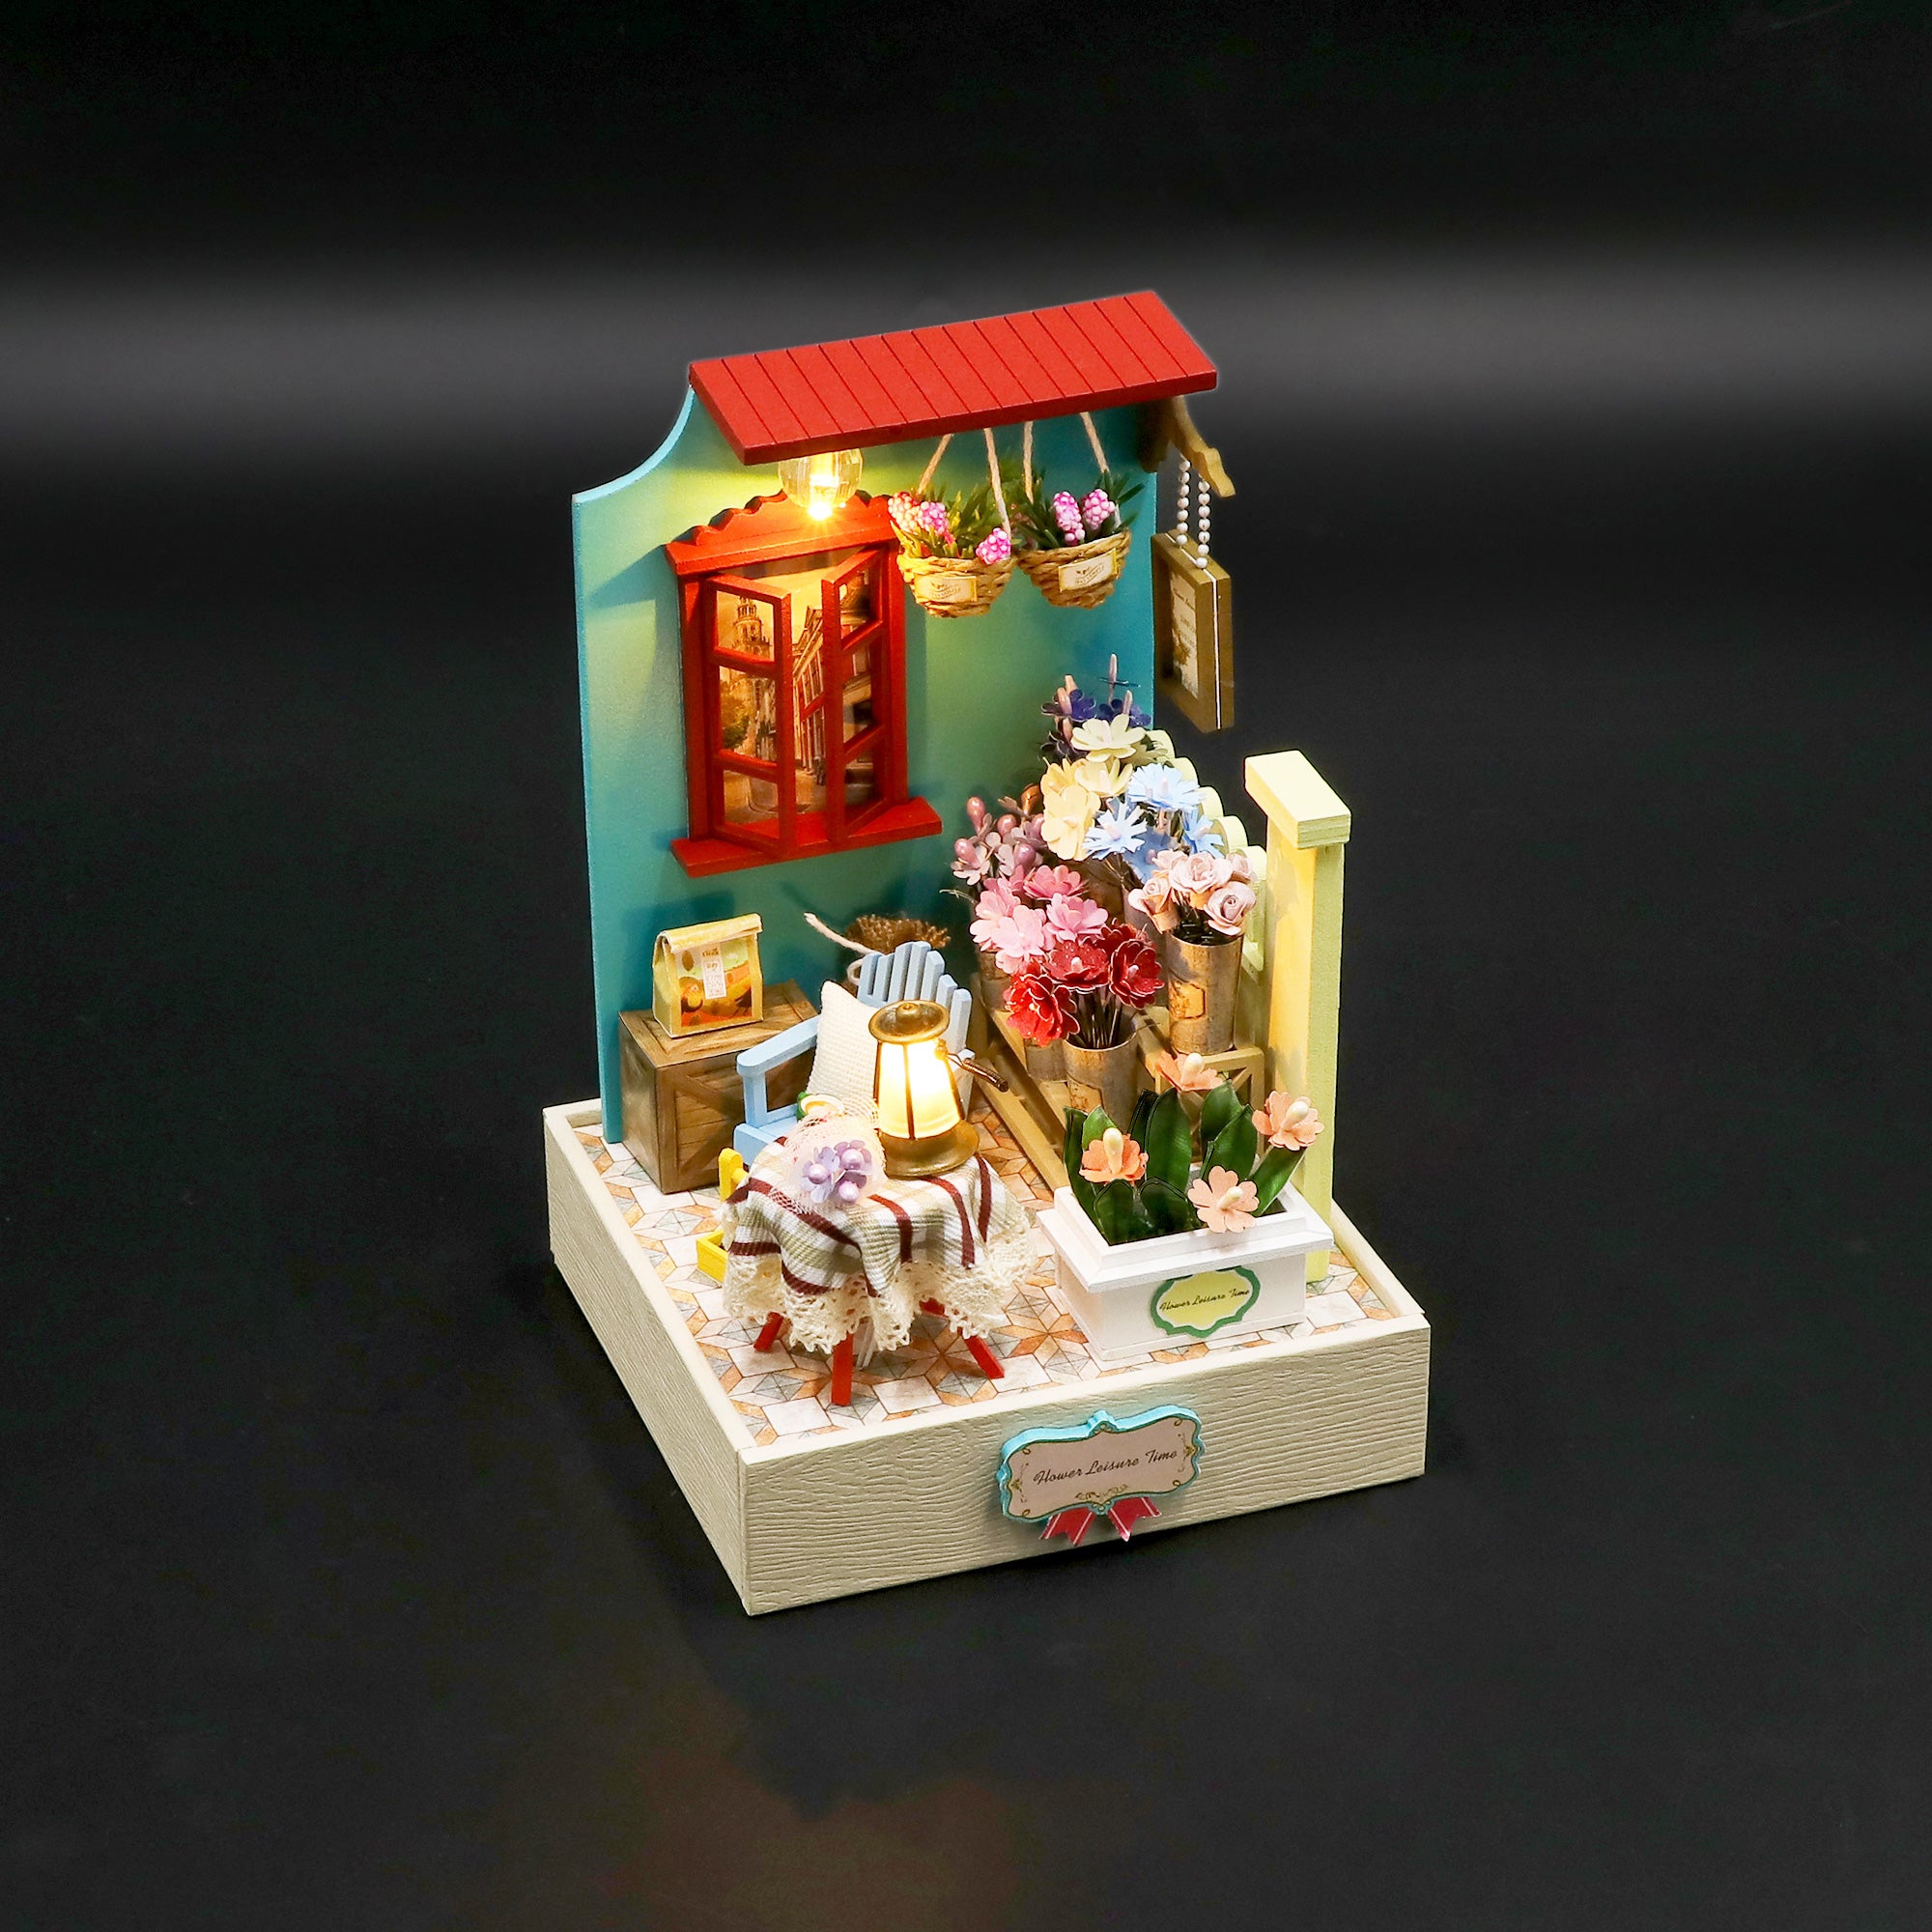 Flower Leisure Time Mini Casita Armable con Caja Exhibidor